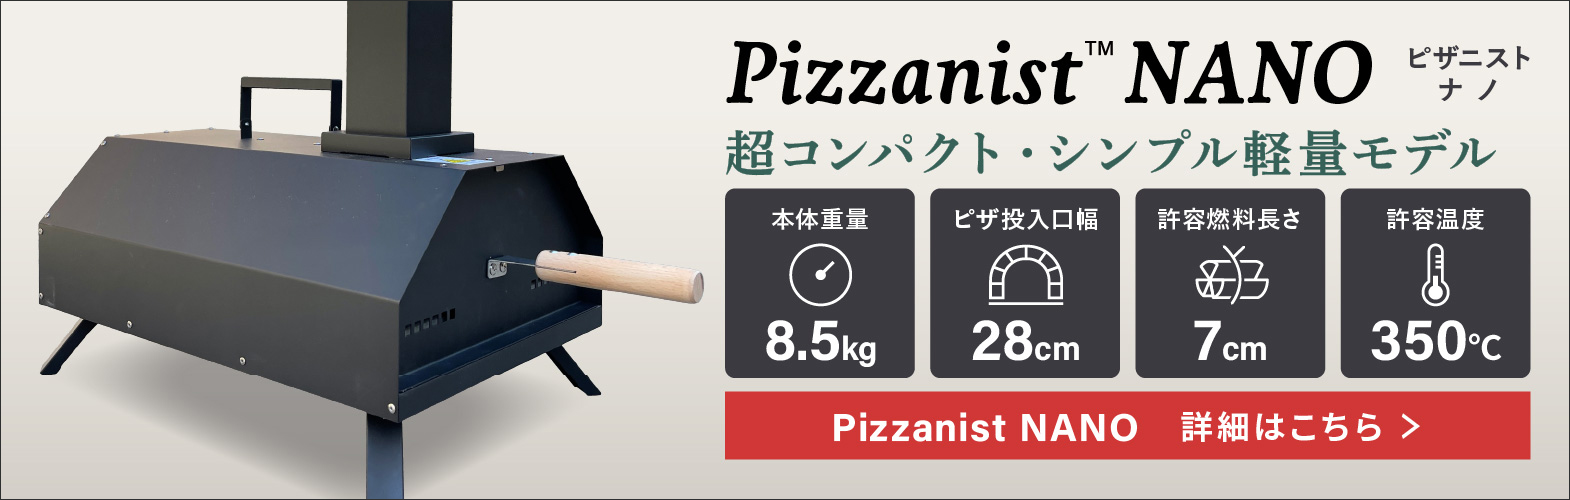 ポータブルピザ窯 Pizzanist NANO